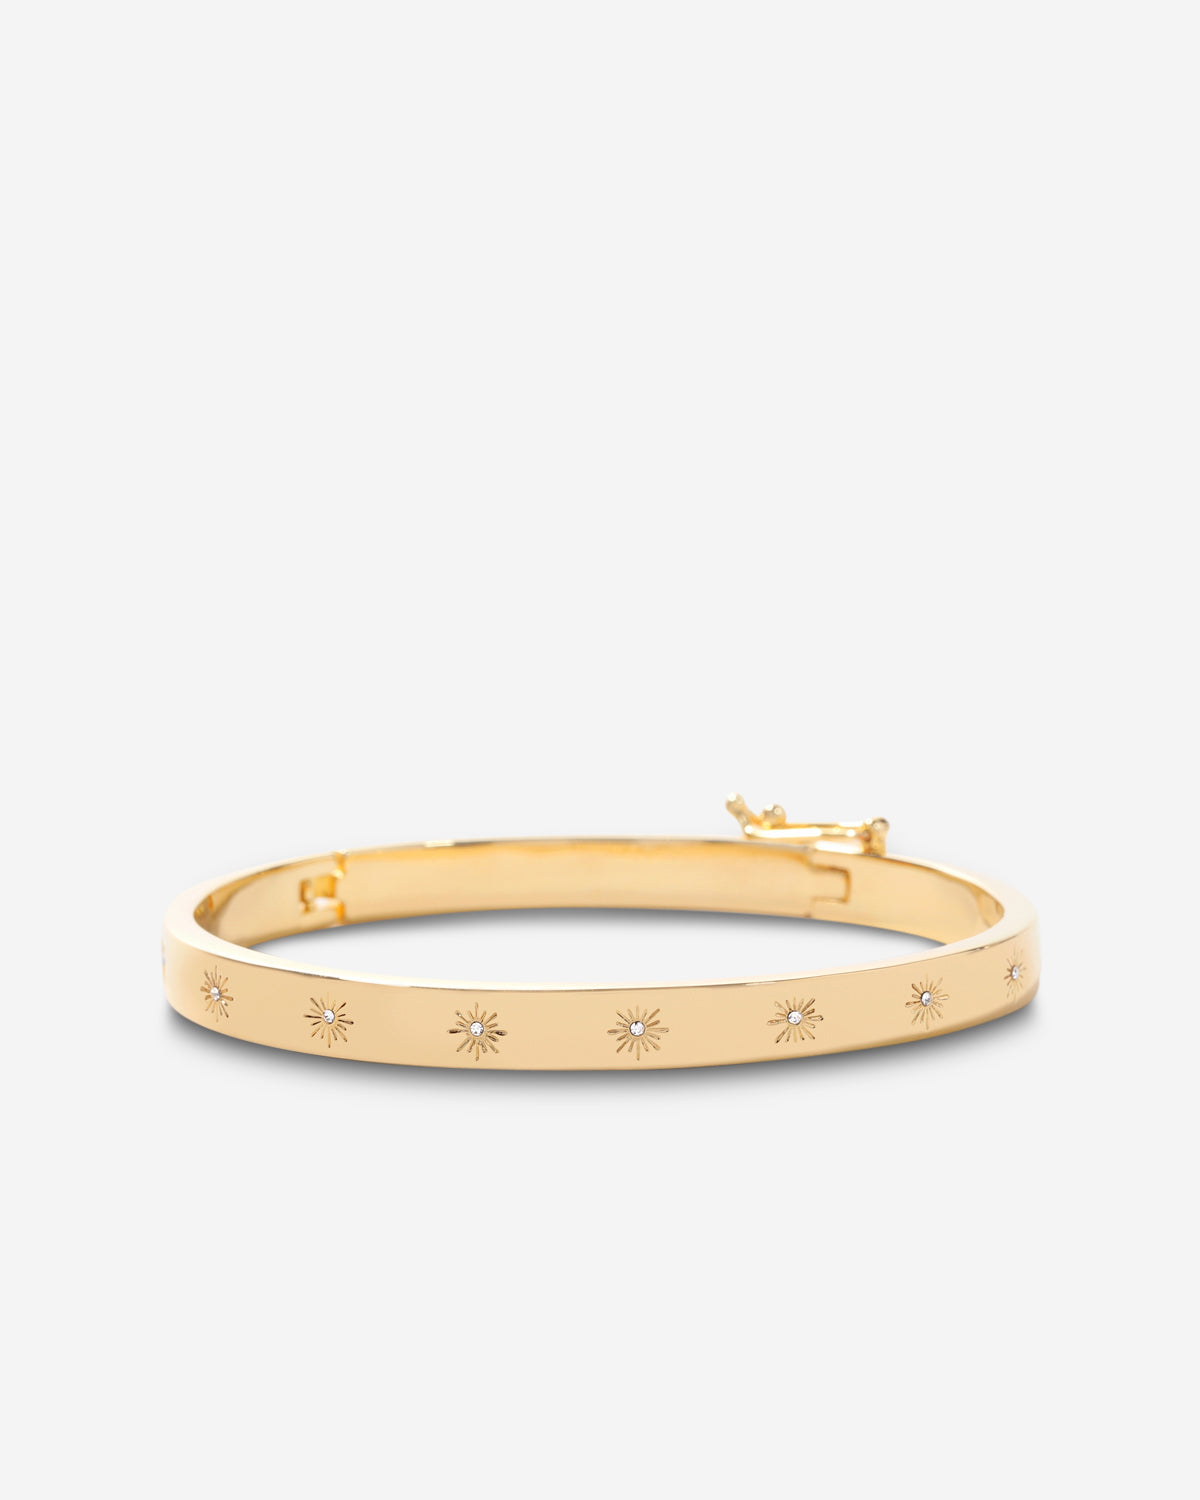 French 18K Rose Gold Hinged Bangle Bracelet Set